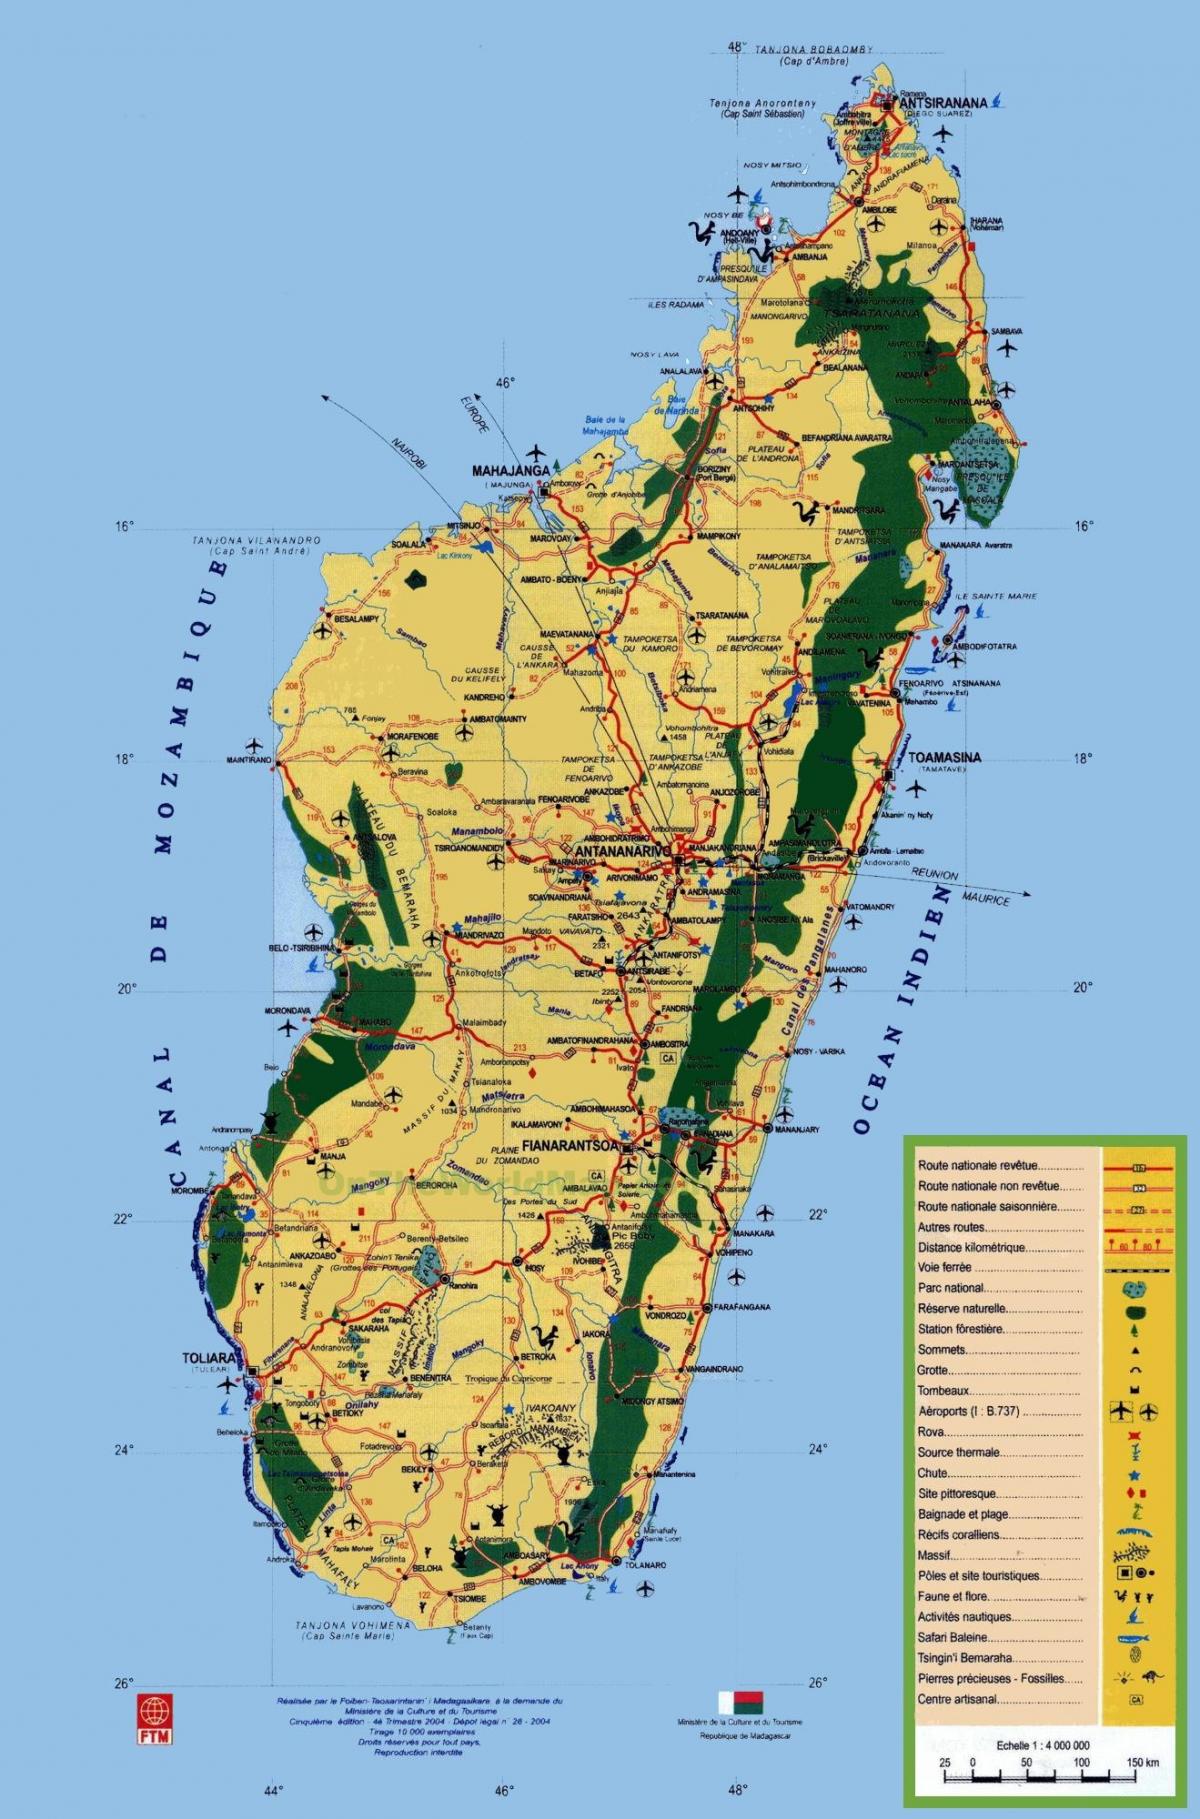 Madagaskar turistik haritası